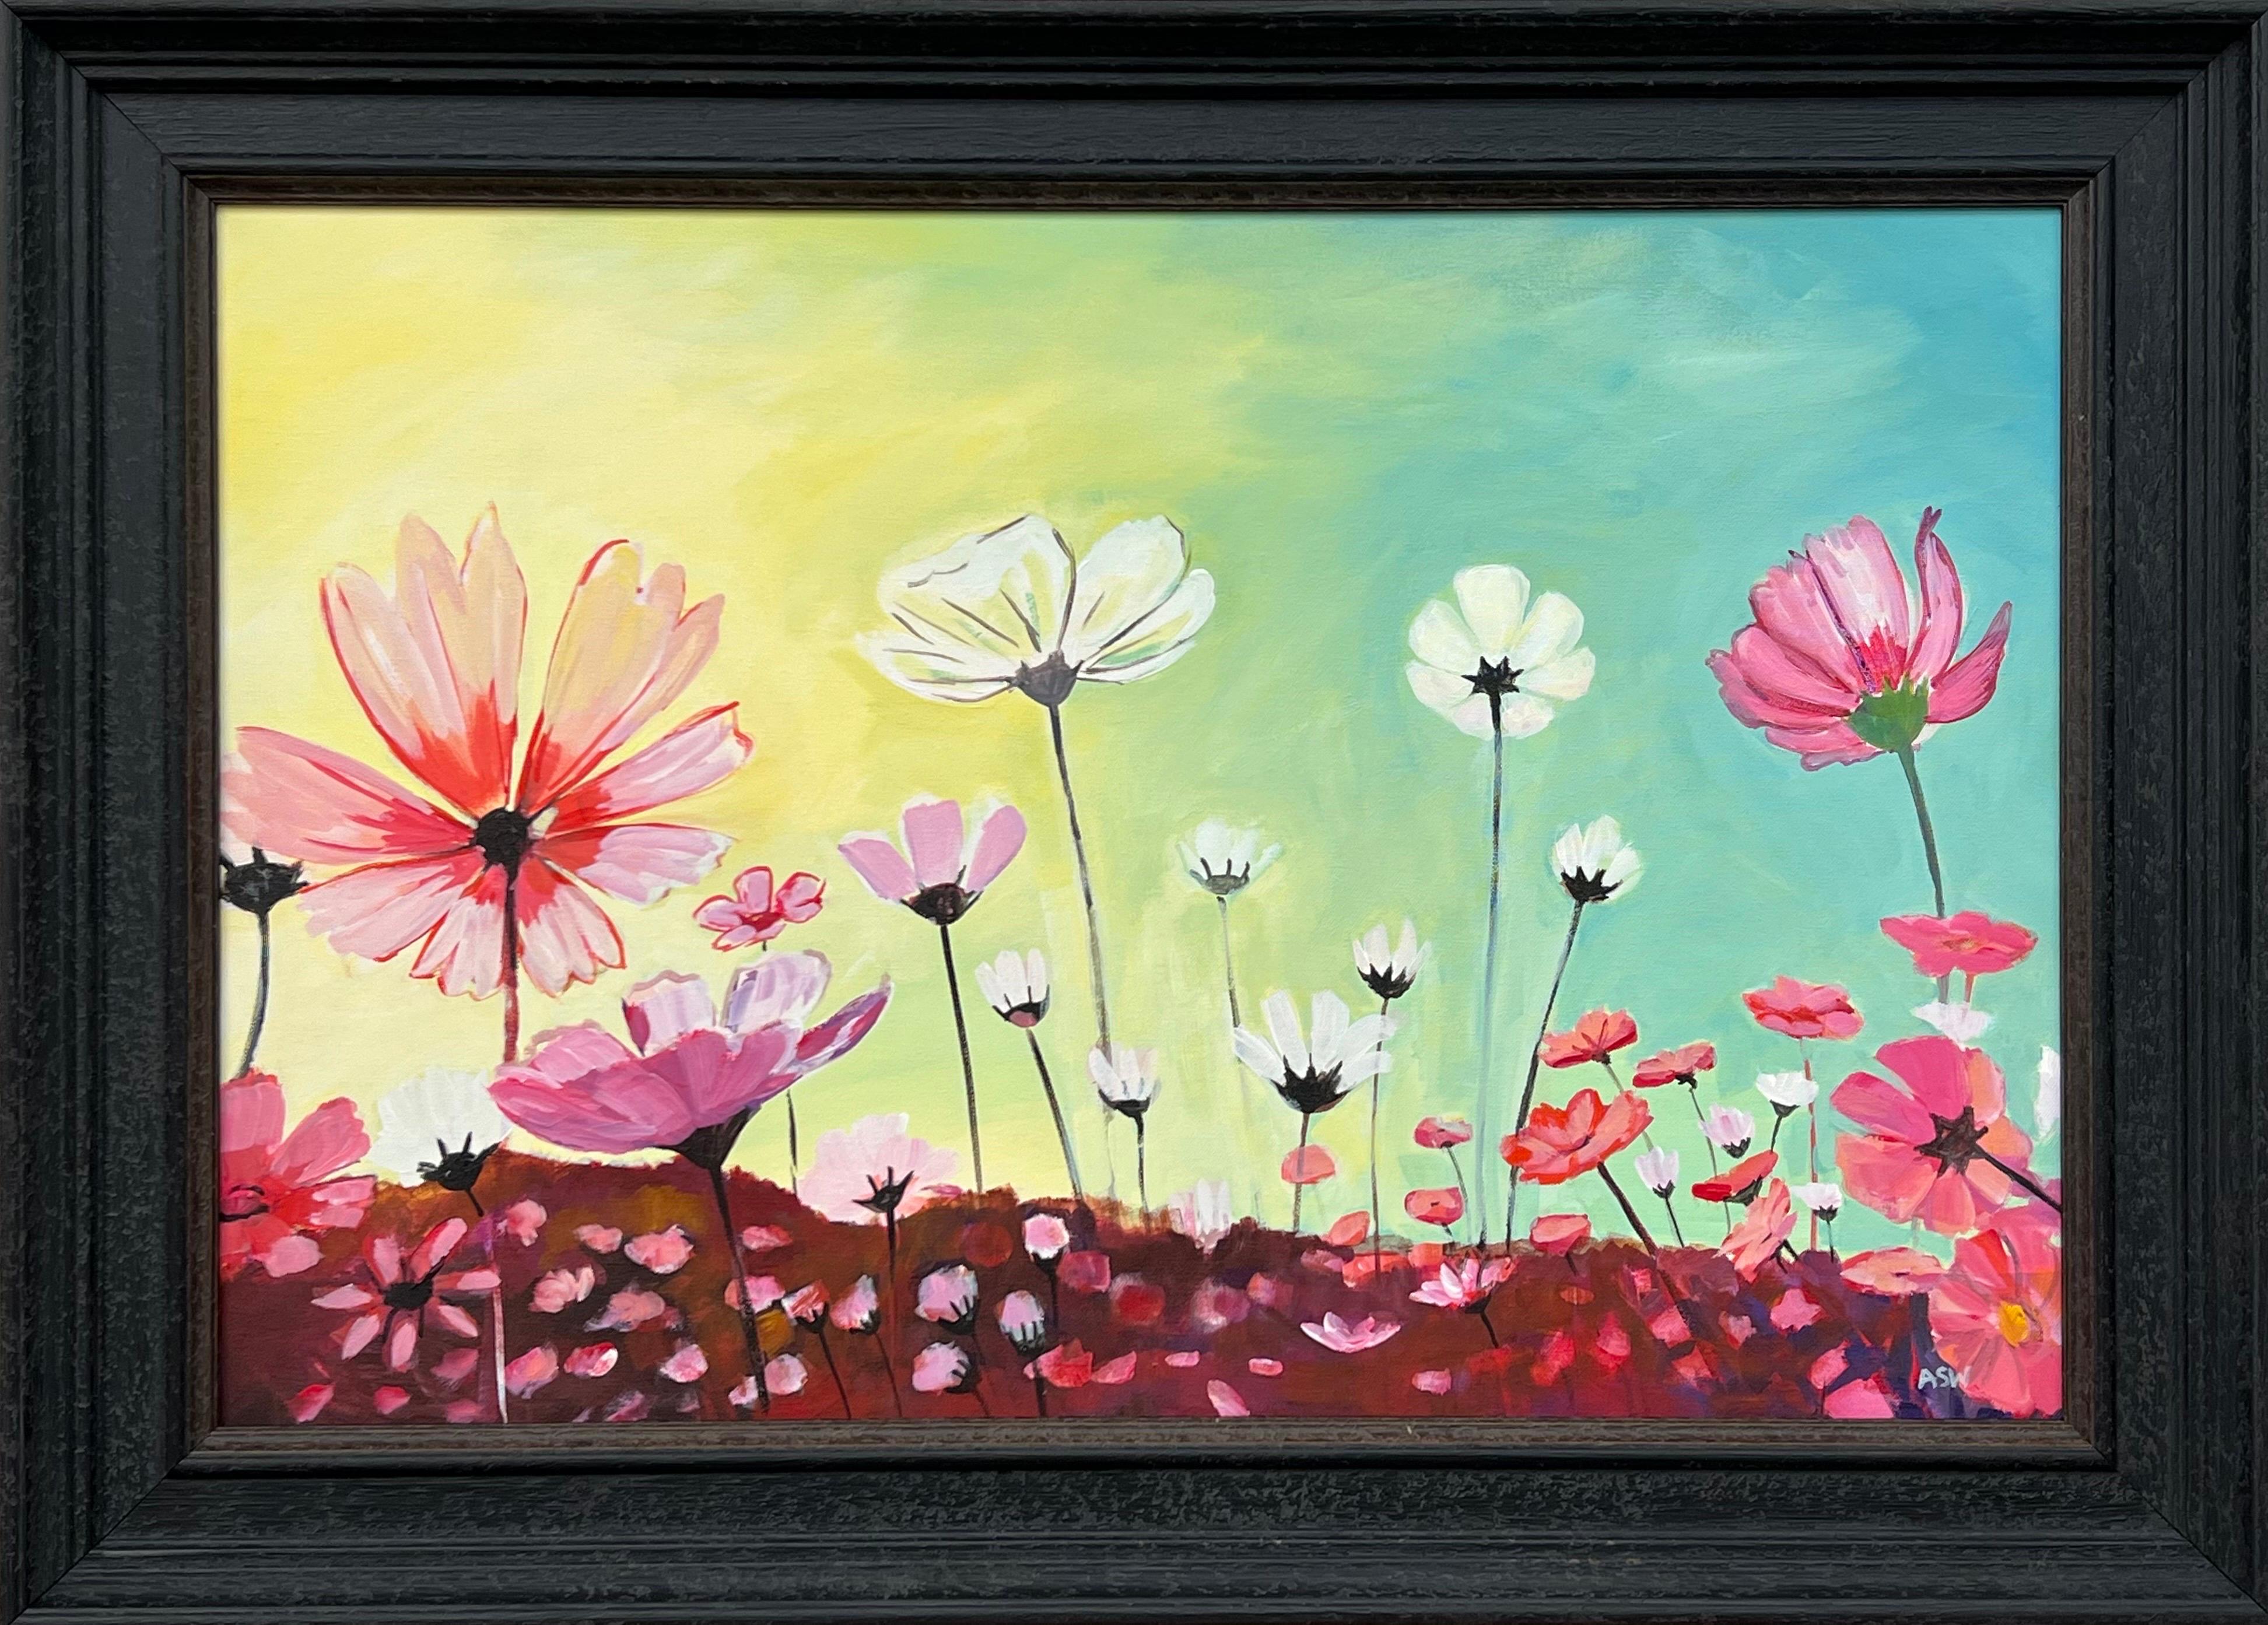 Still-Life Painting Angela Wakefield - Étude de conception de fleurs roses et blanches sauvages sur fond jaune et turquoise